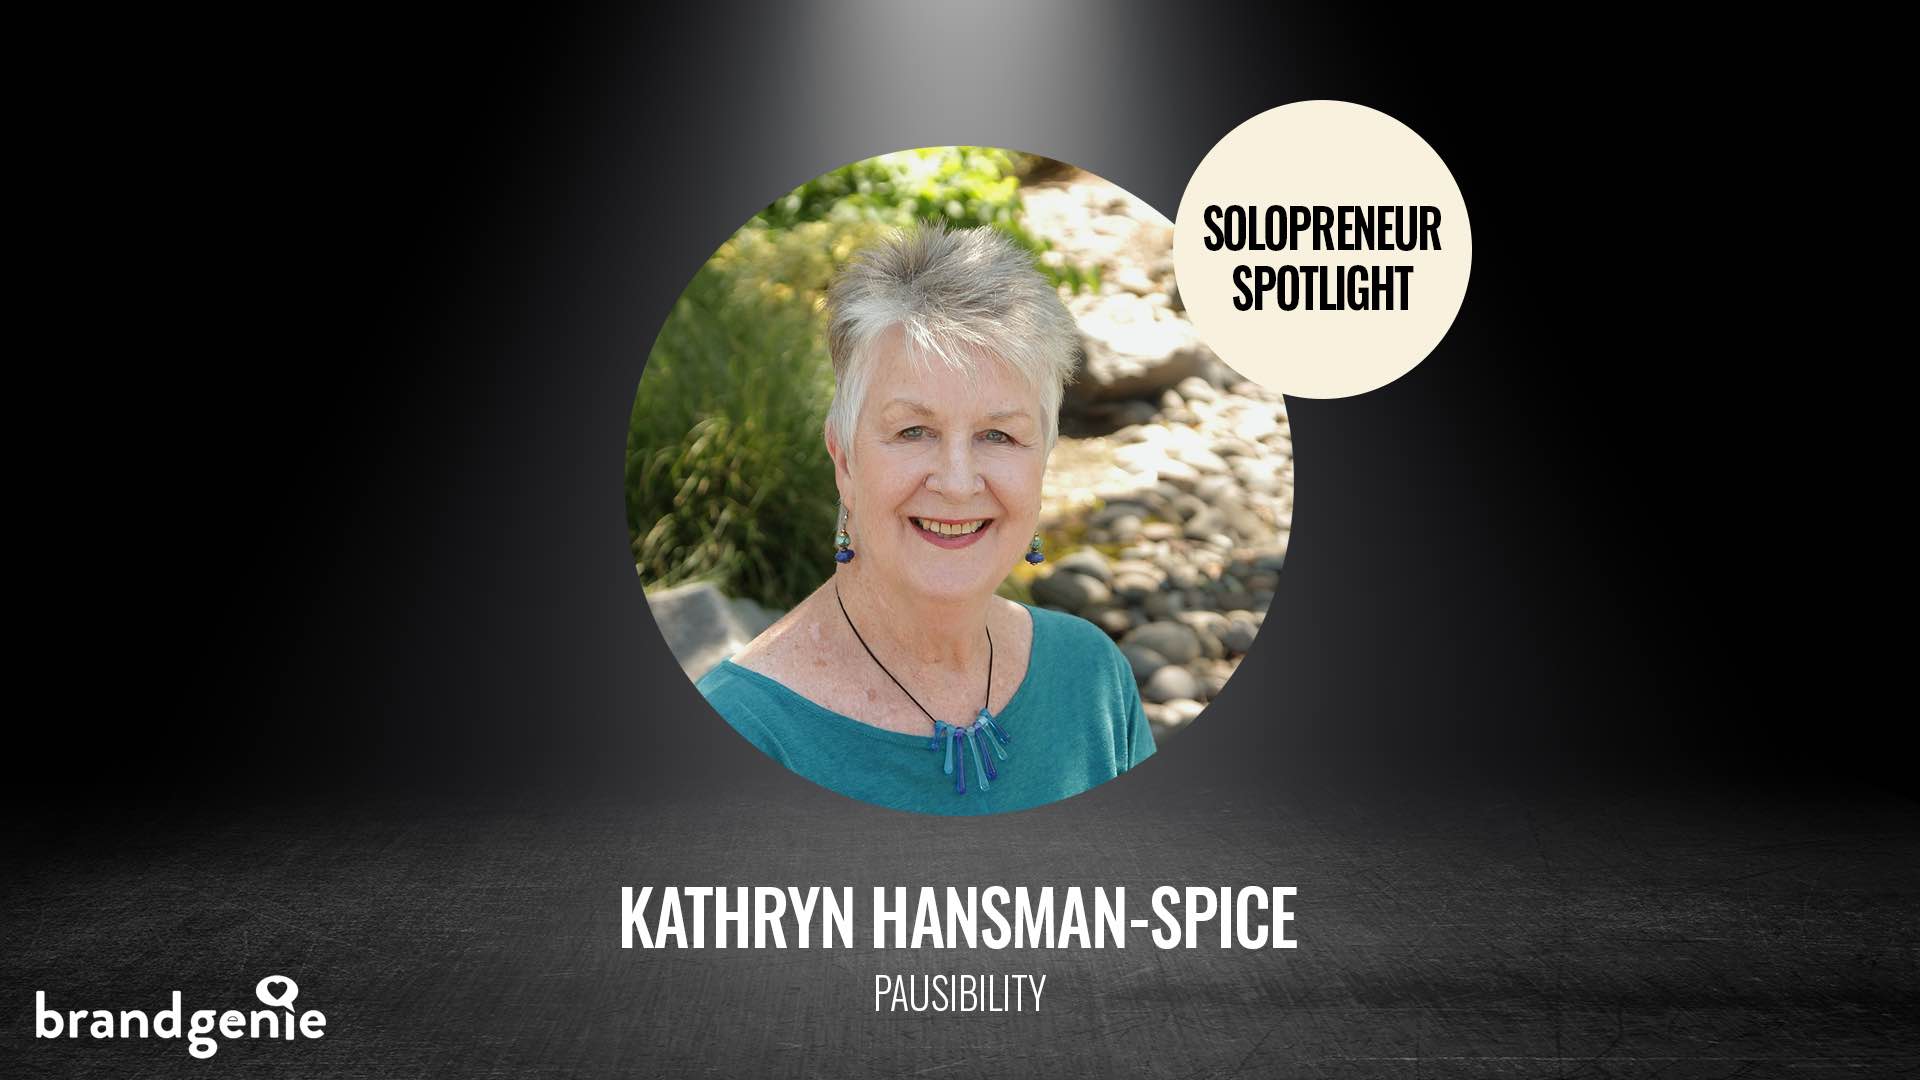 Kathryn Hansman-Spice